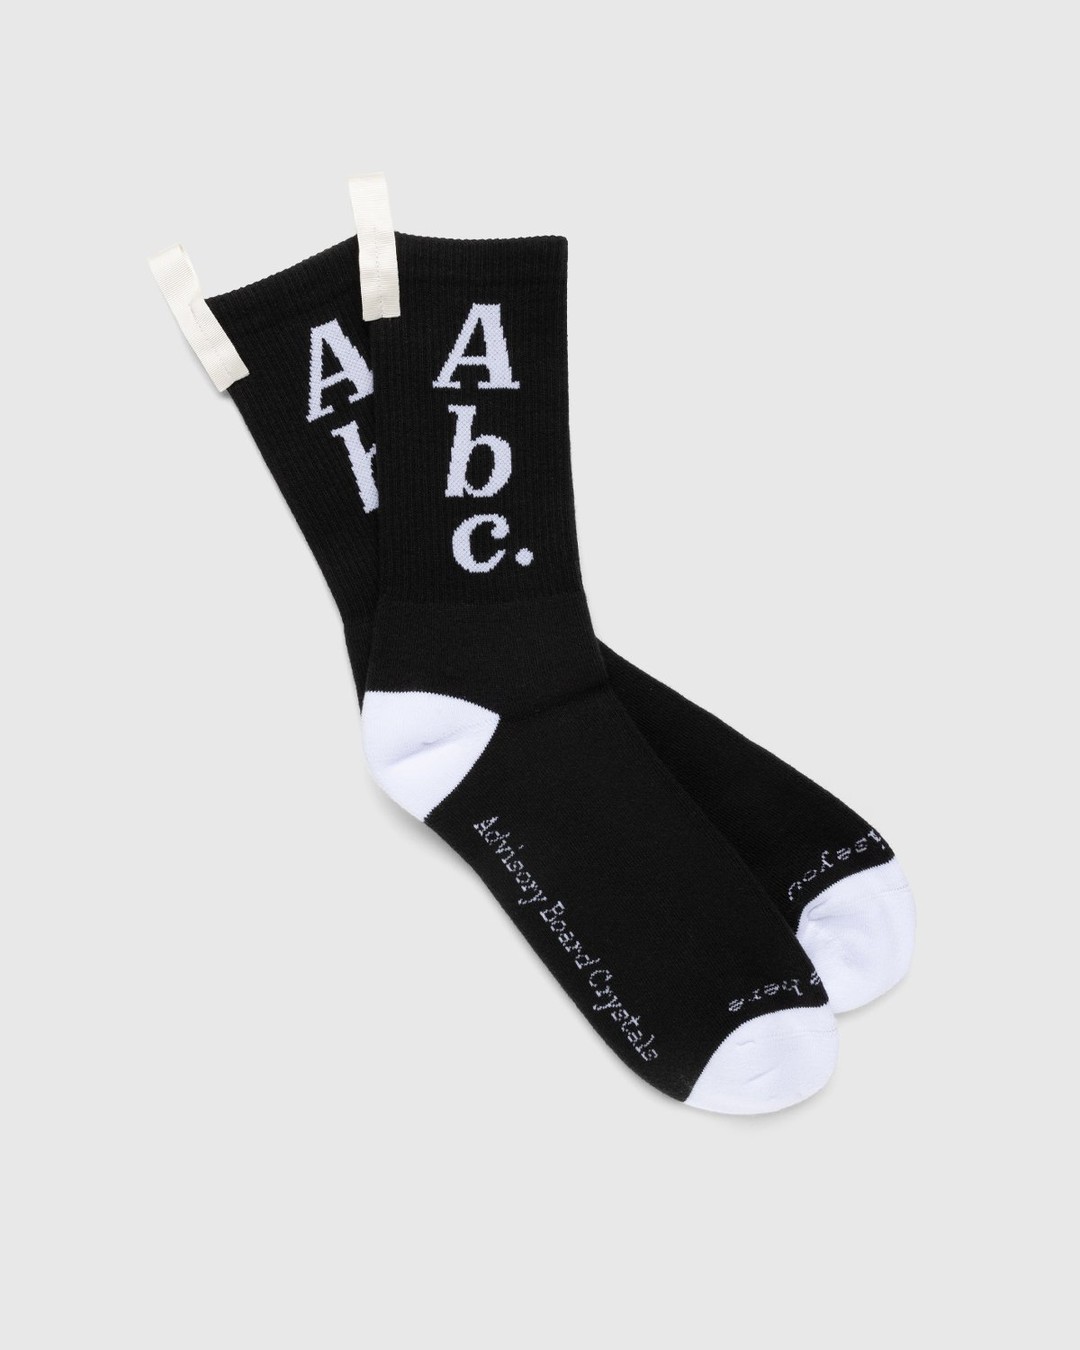 Abc. – Crew Socks Anthracite - Crew - Black - Image 1